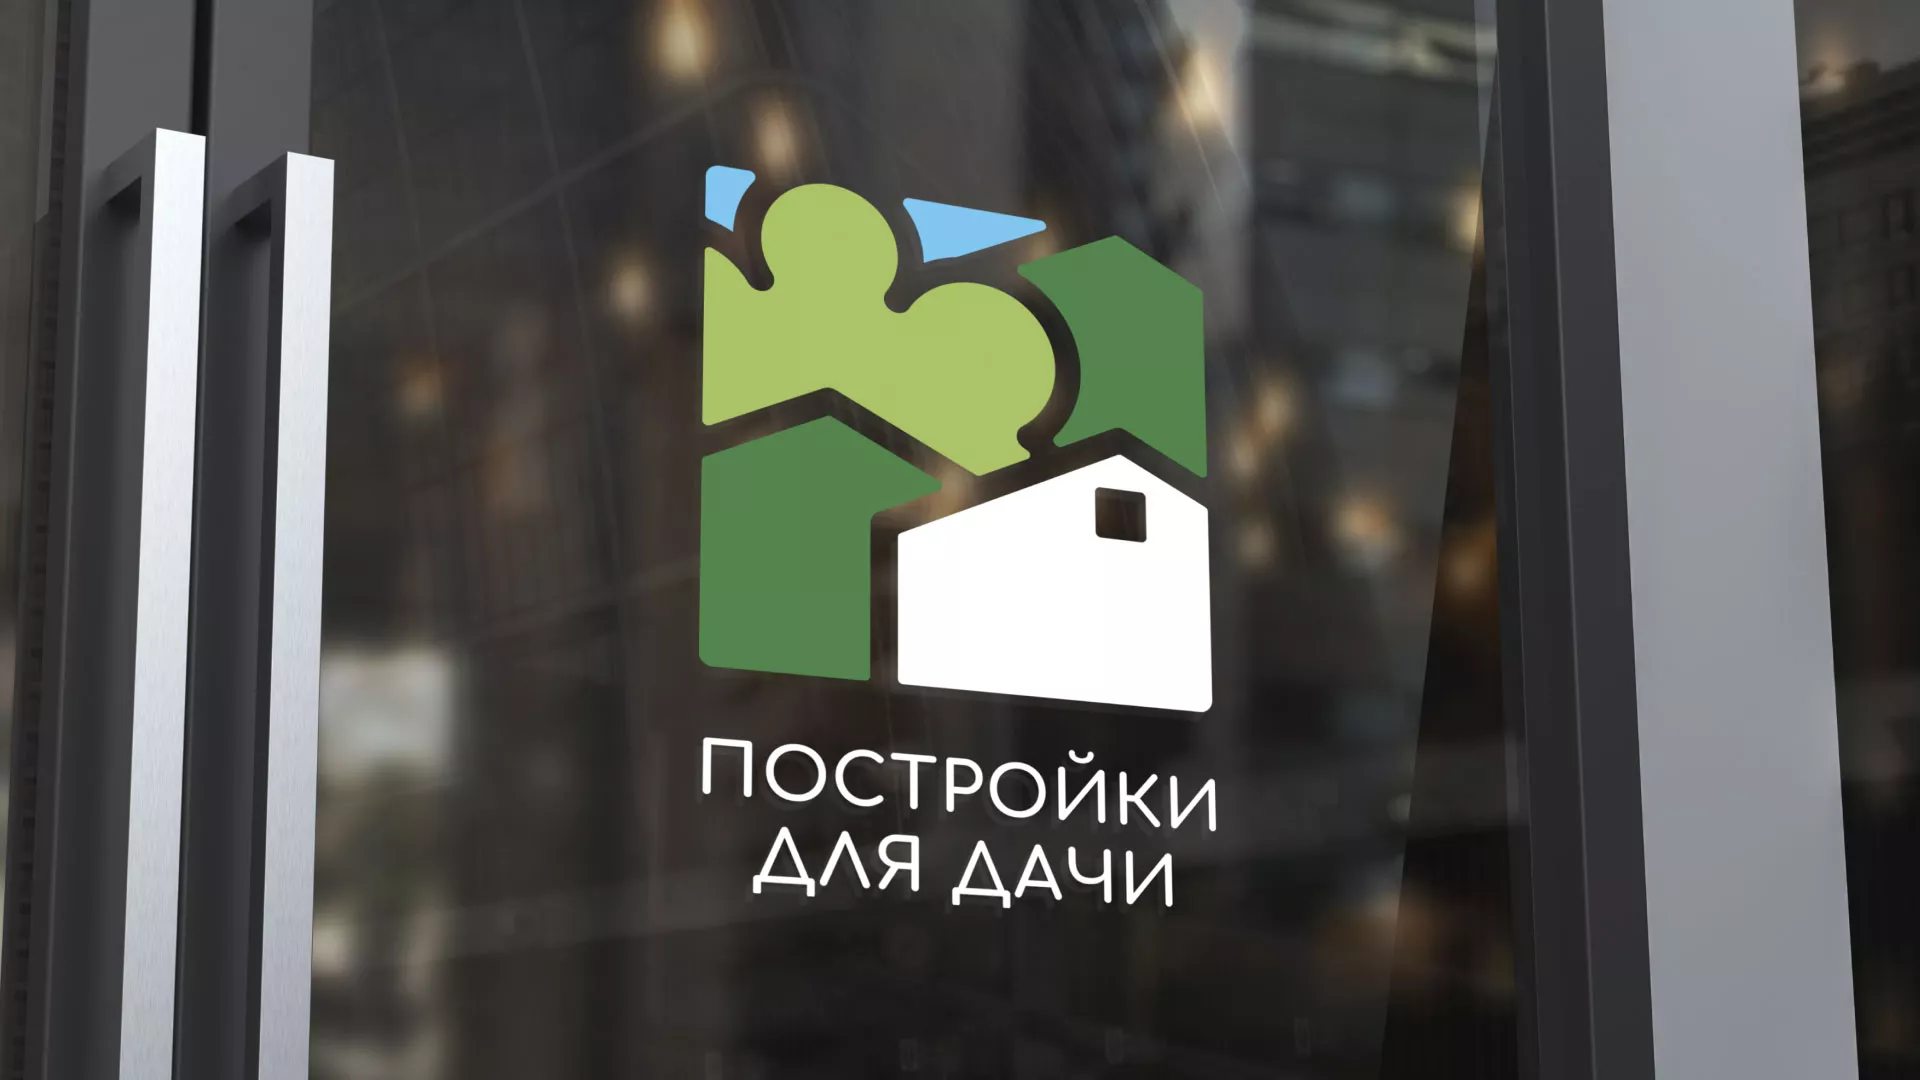 Разработка логотипа в Мысках для компании «Постройки для дачи»